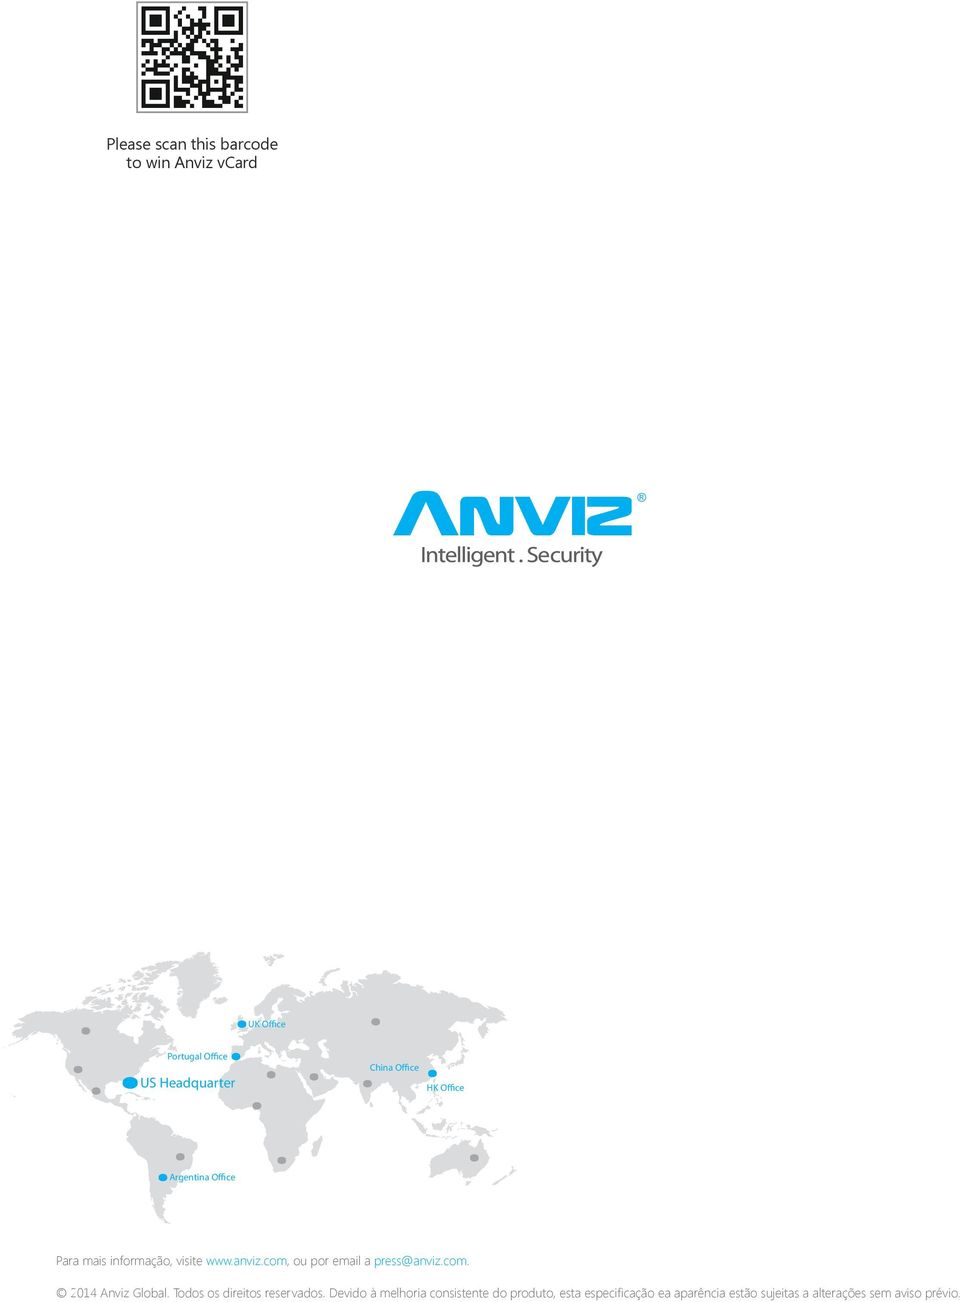 com, ou por email a press@anviz.com. 2014 Anviz Global. Todos os direitos reservados.